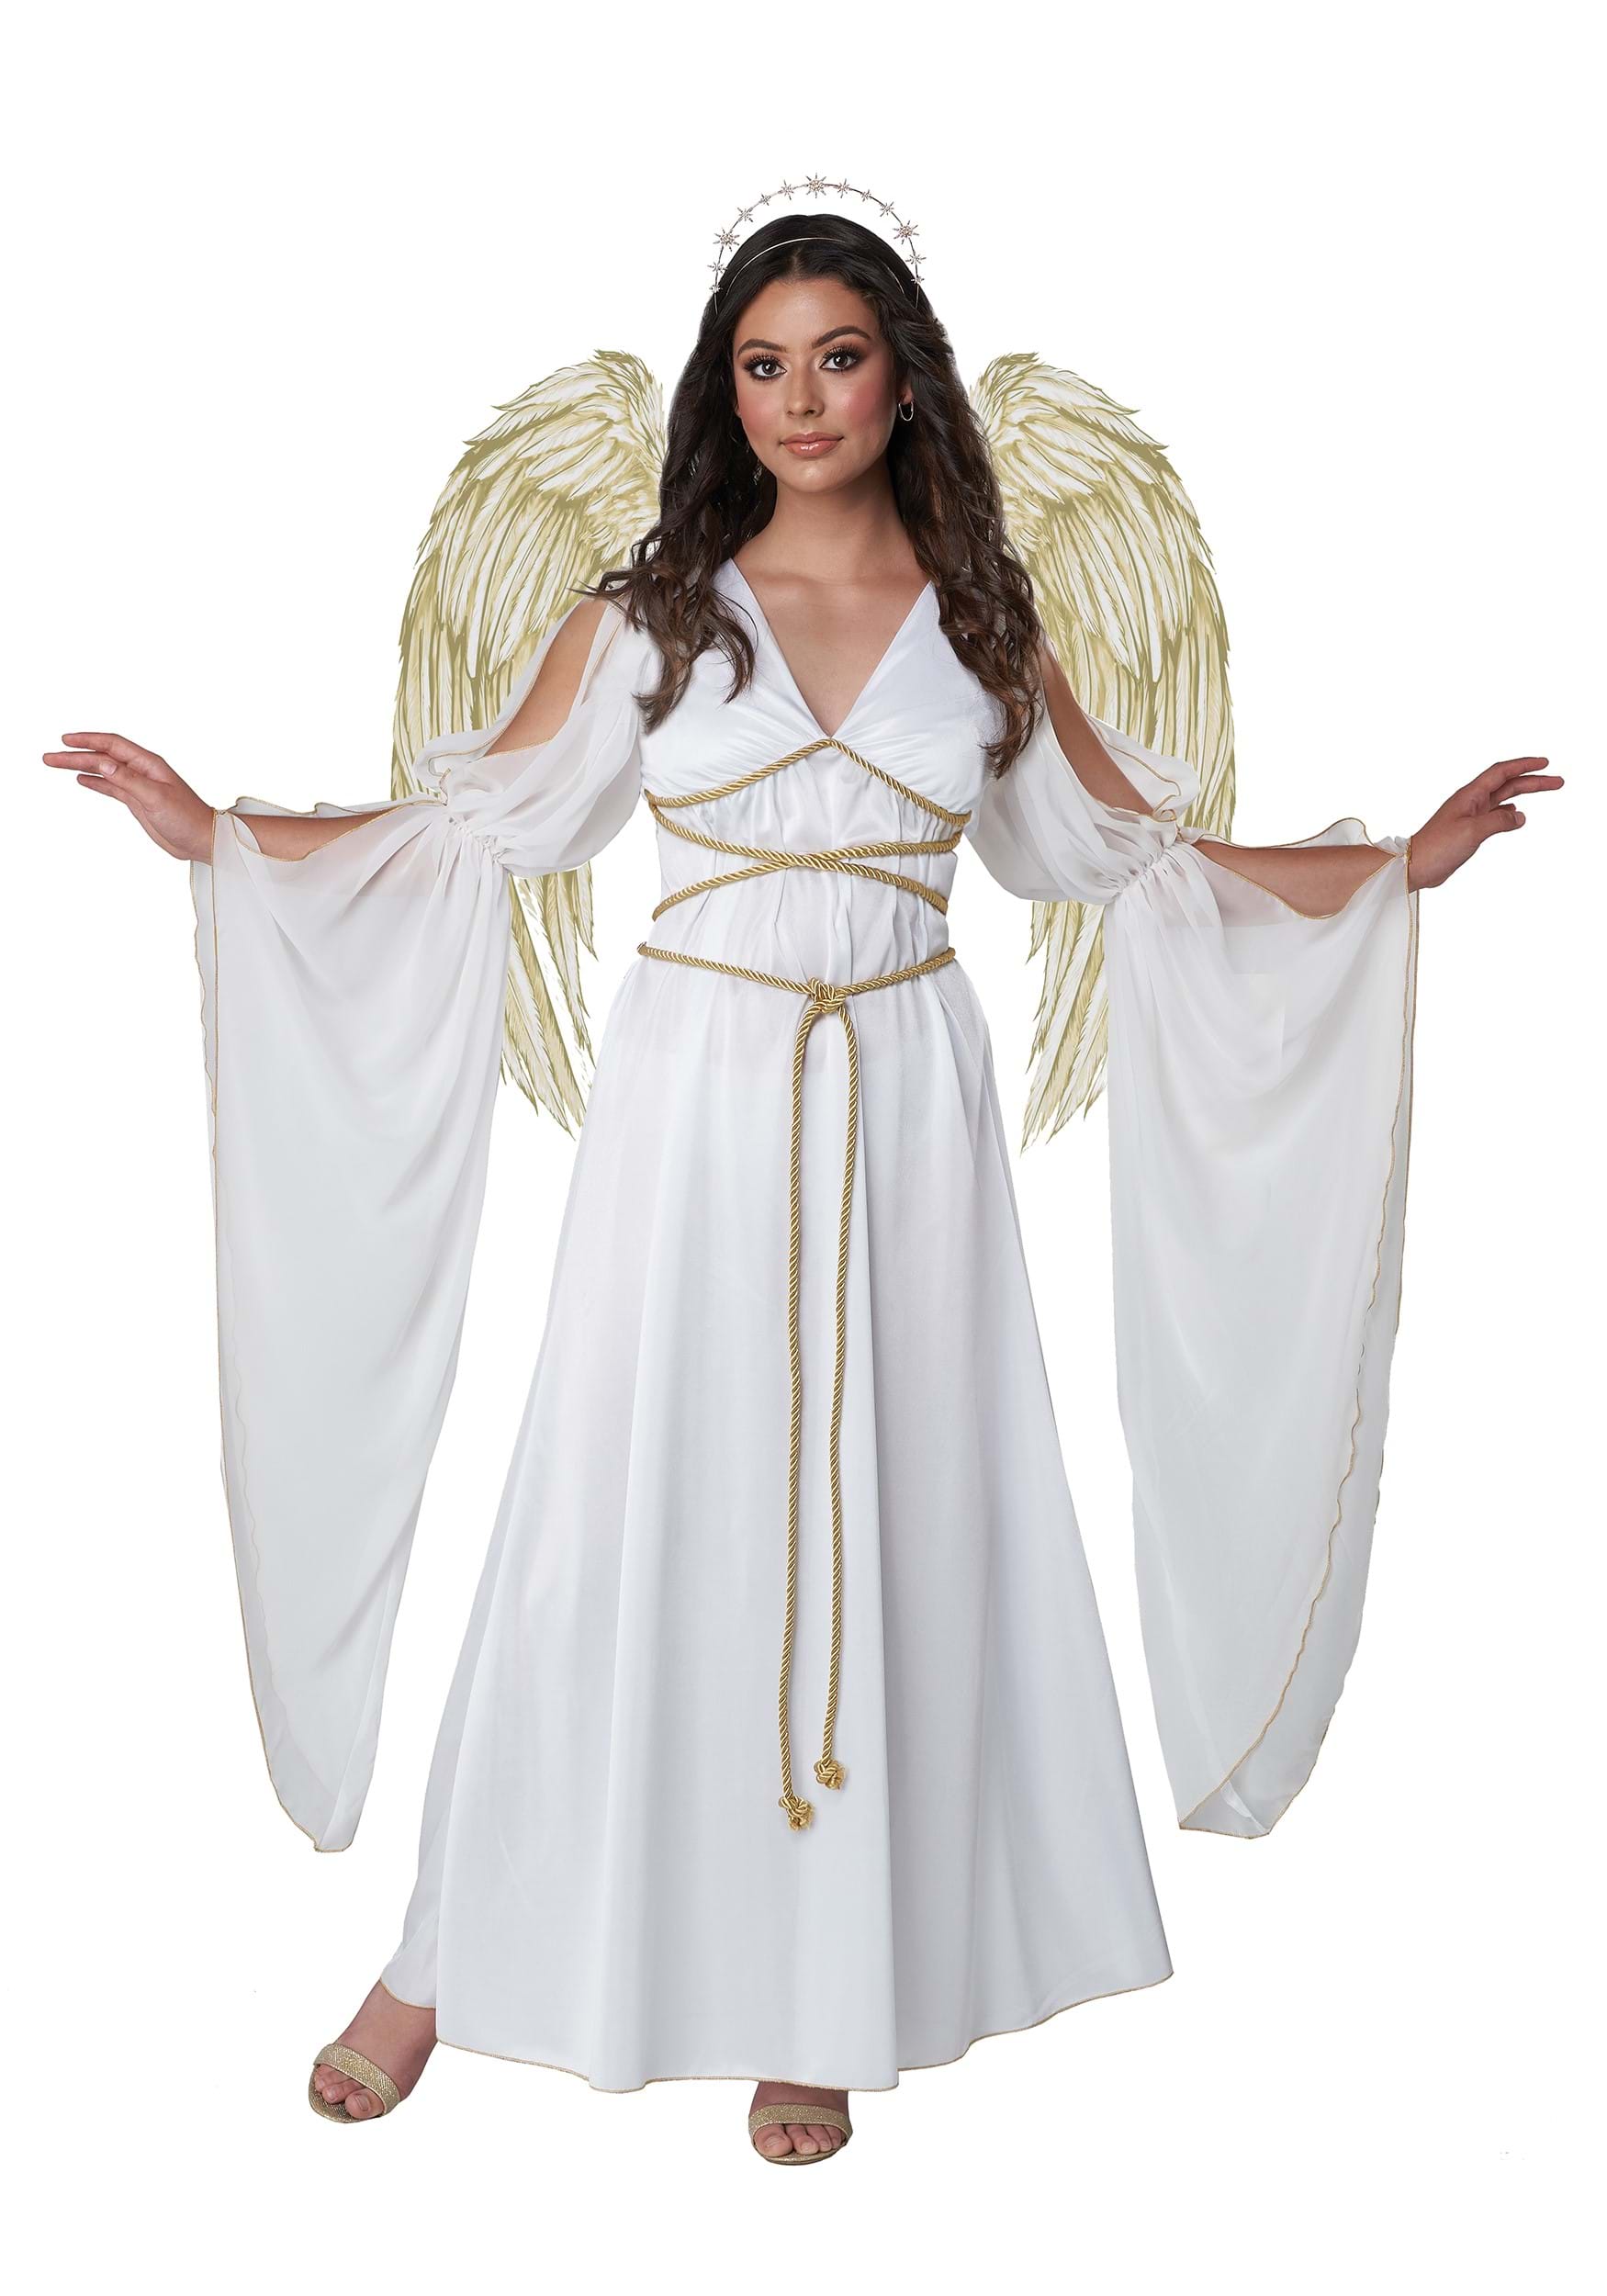 Simply Divine Women's Angel Fancy Dress Costume